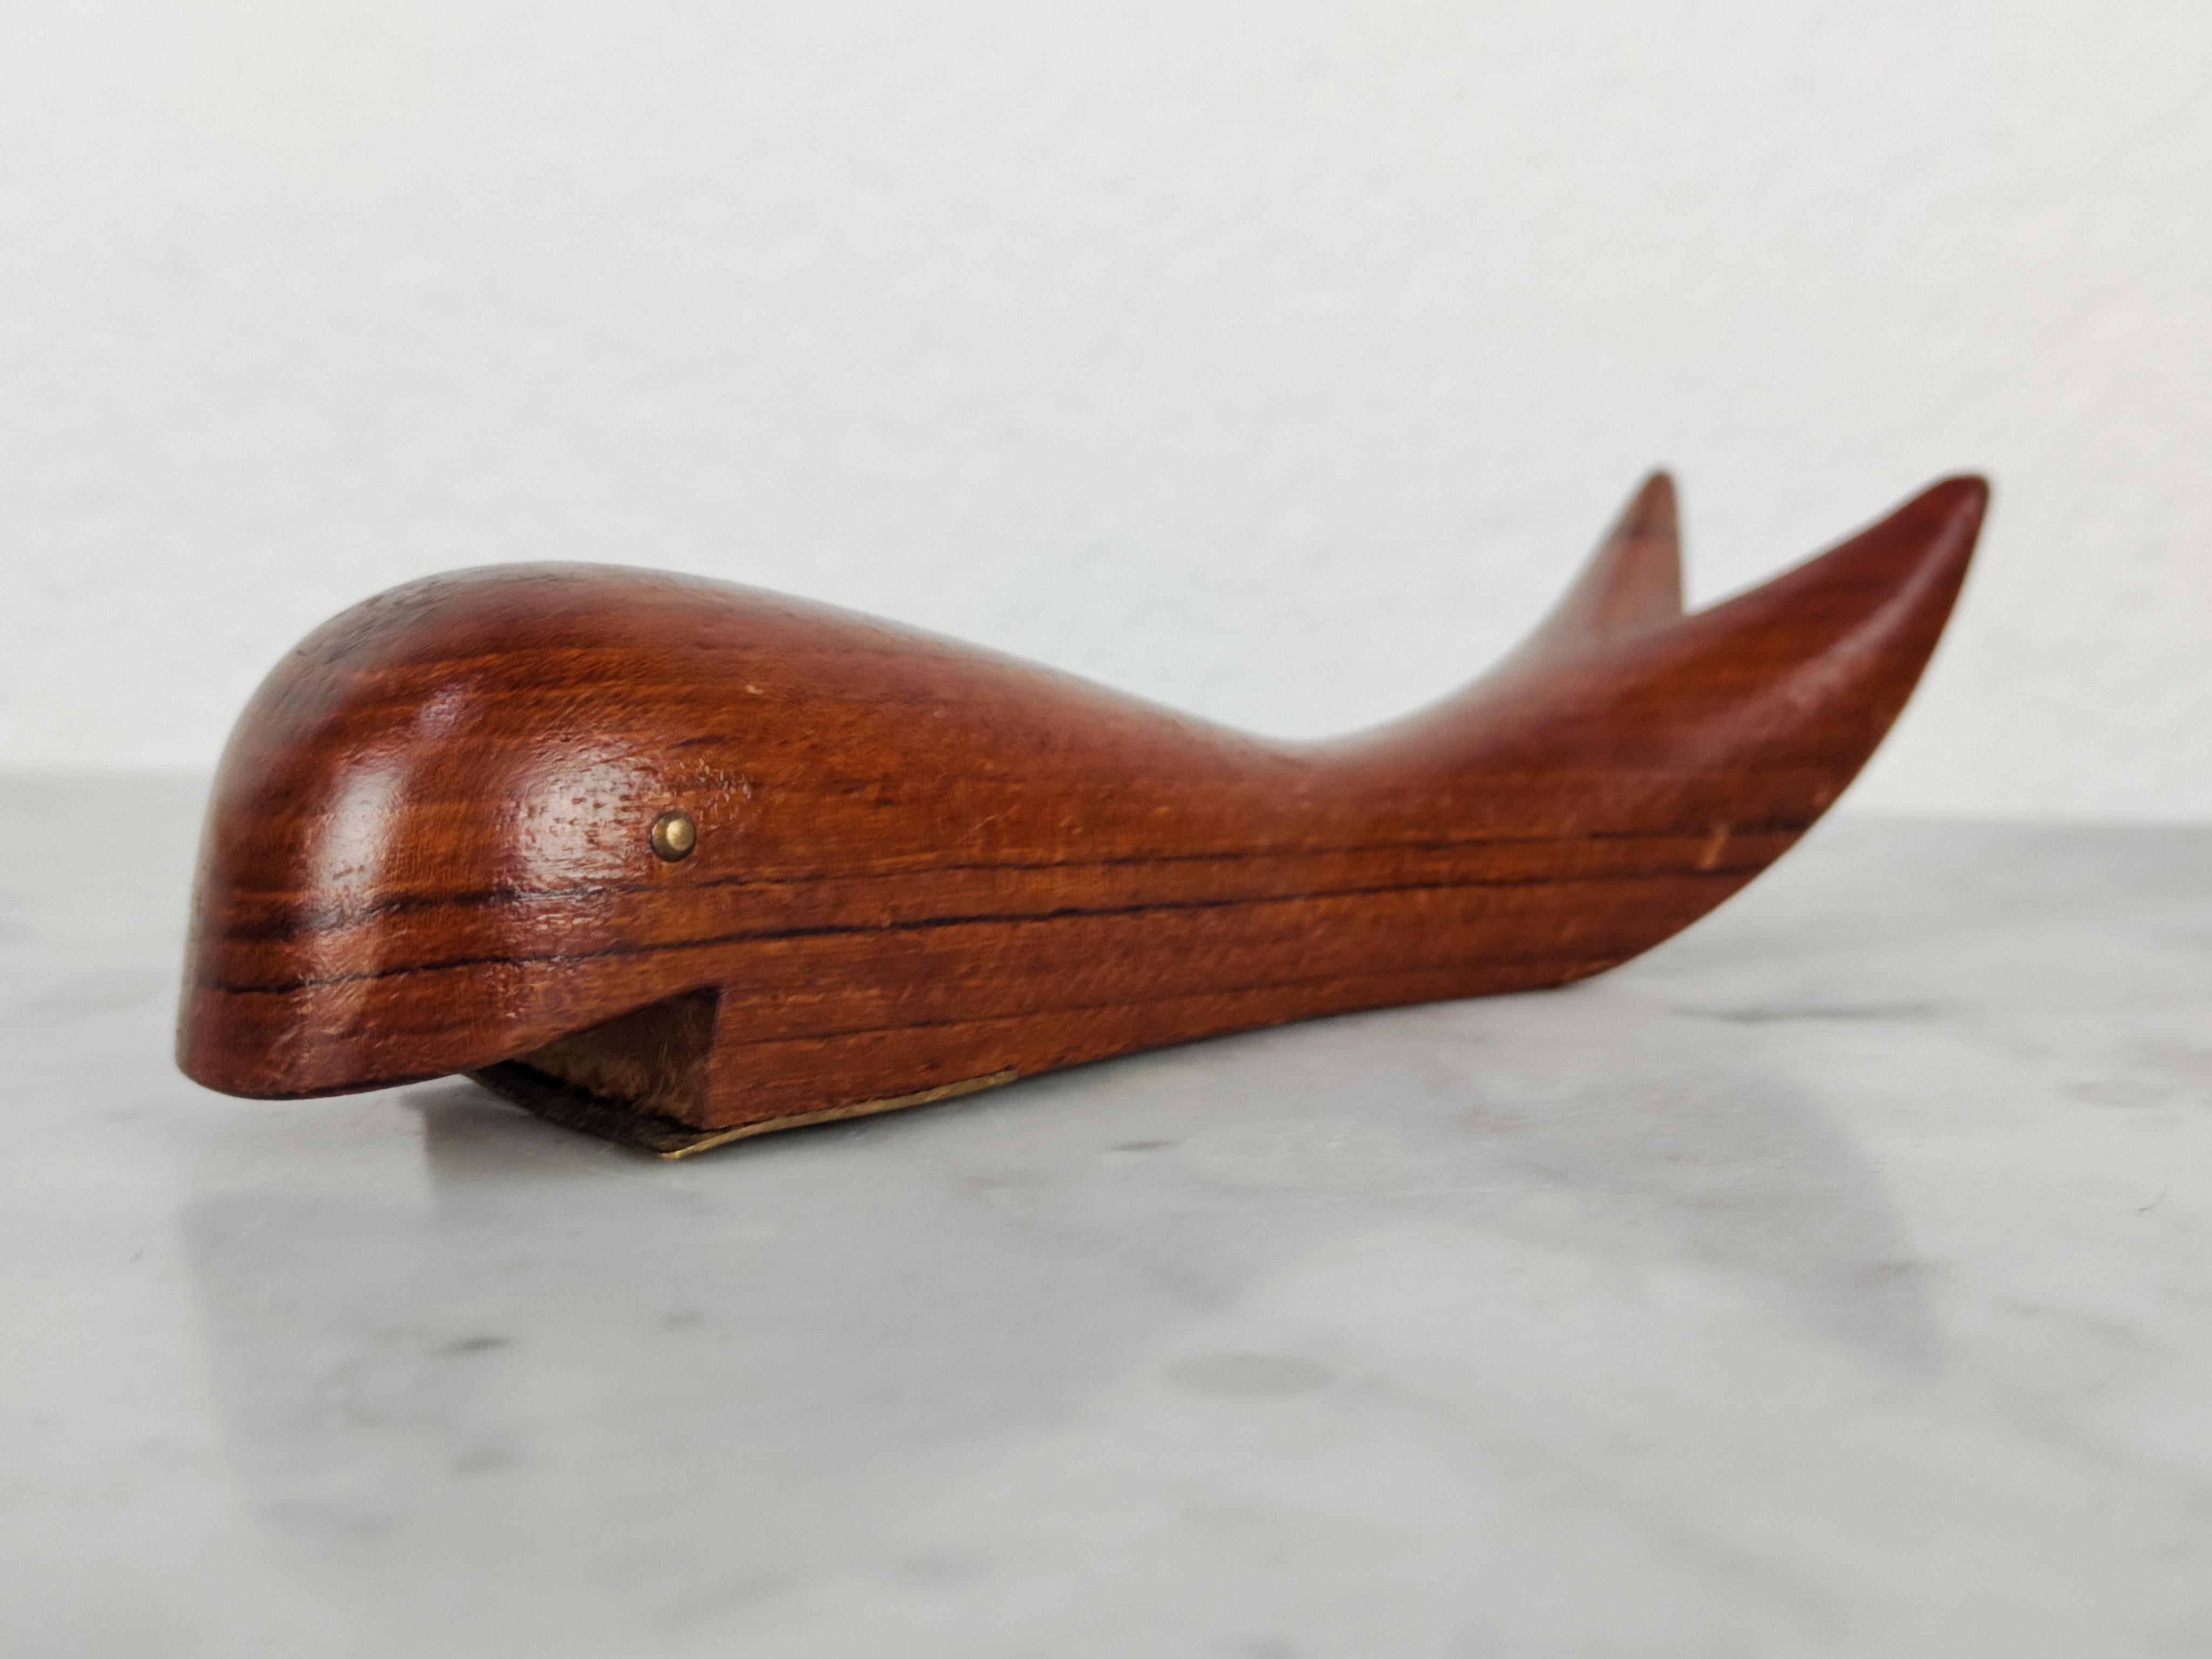 Mid Century Modern Danish Teak Wood Bottle Opener Shaped as Whale, Denmark 1960s For Sale 6